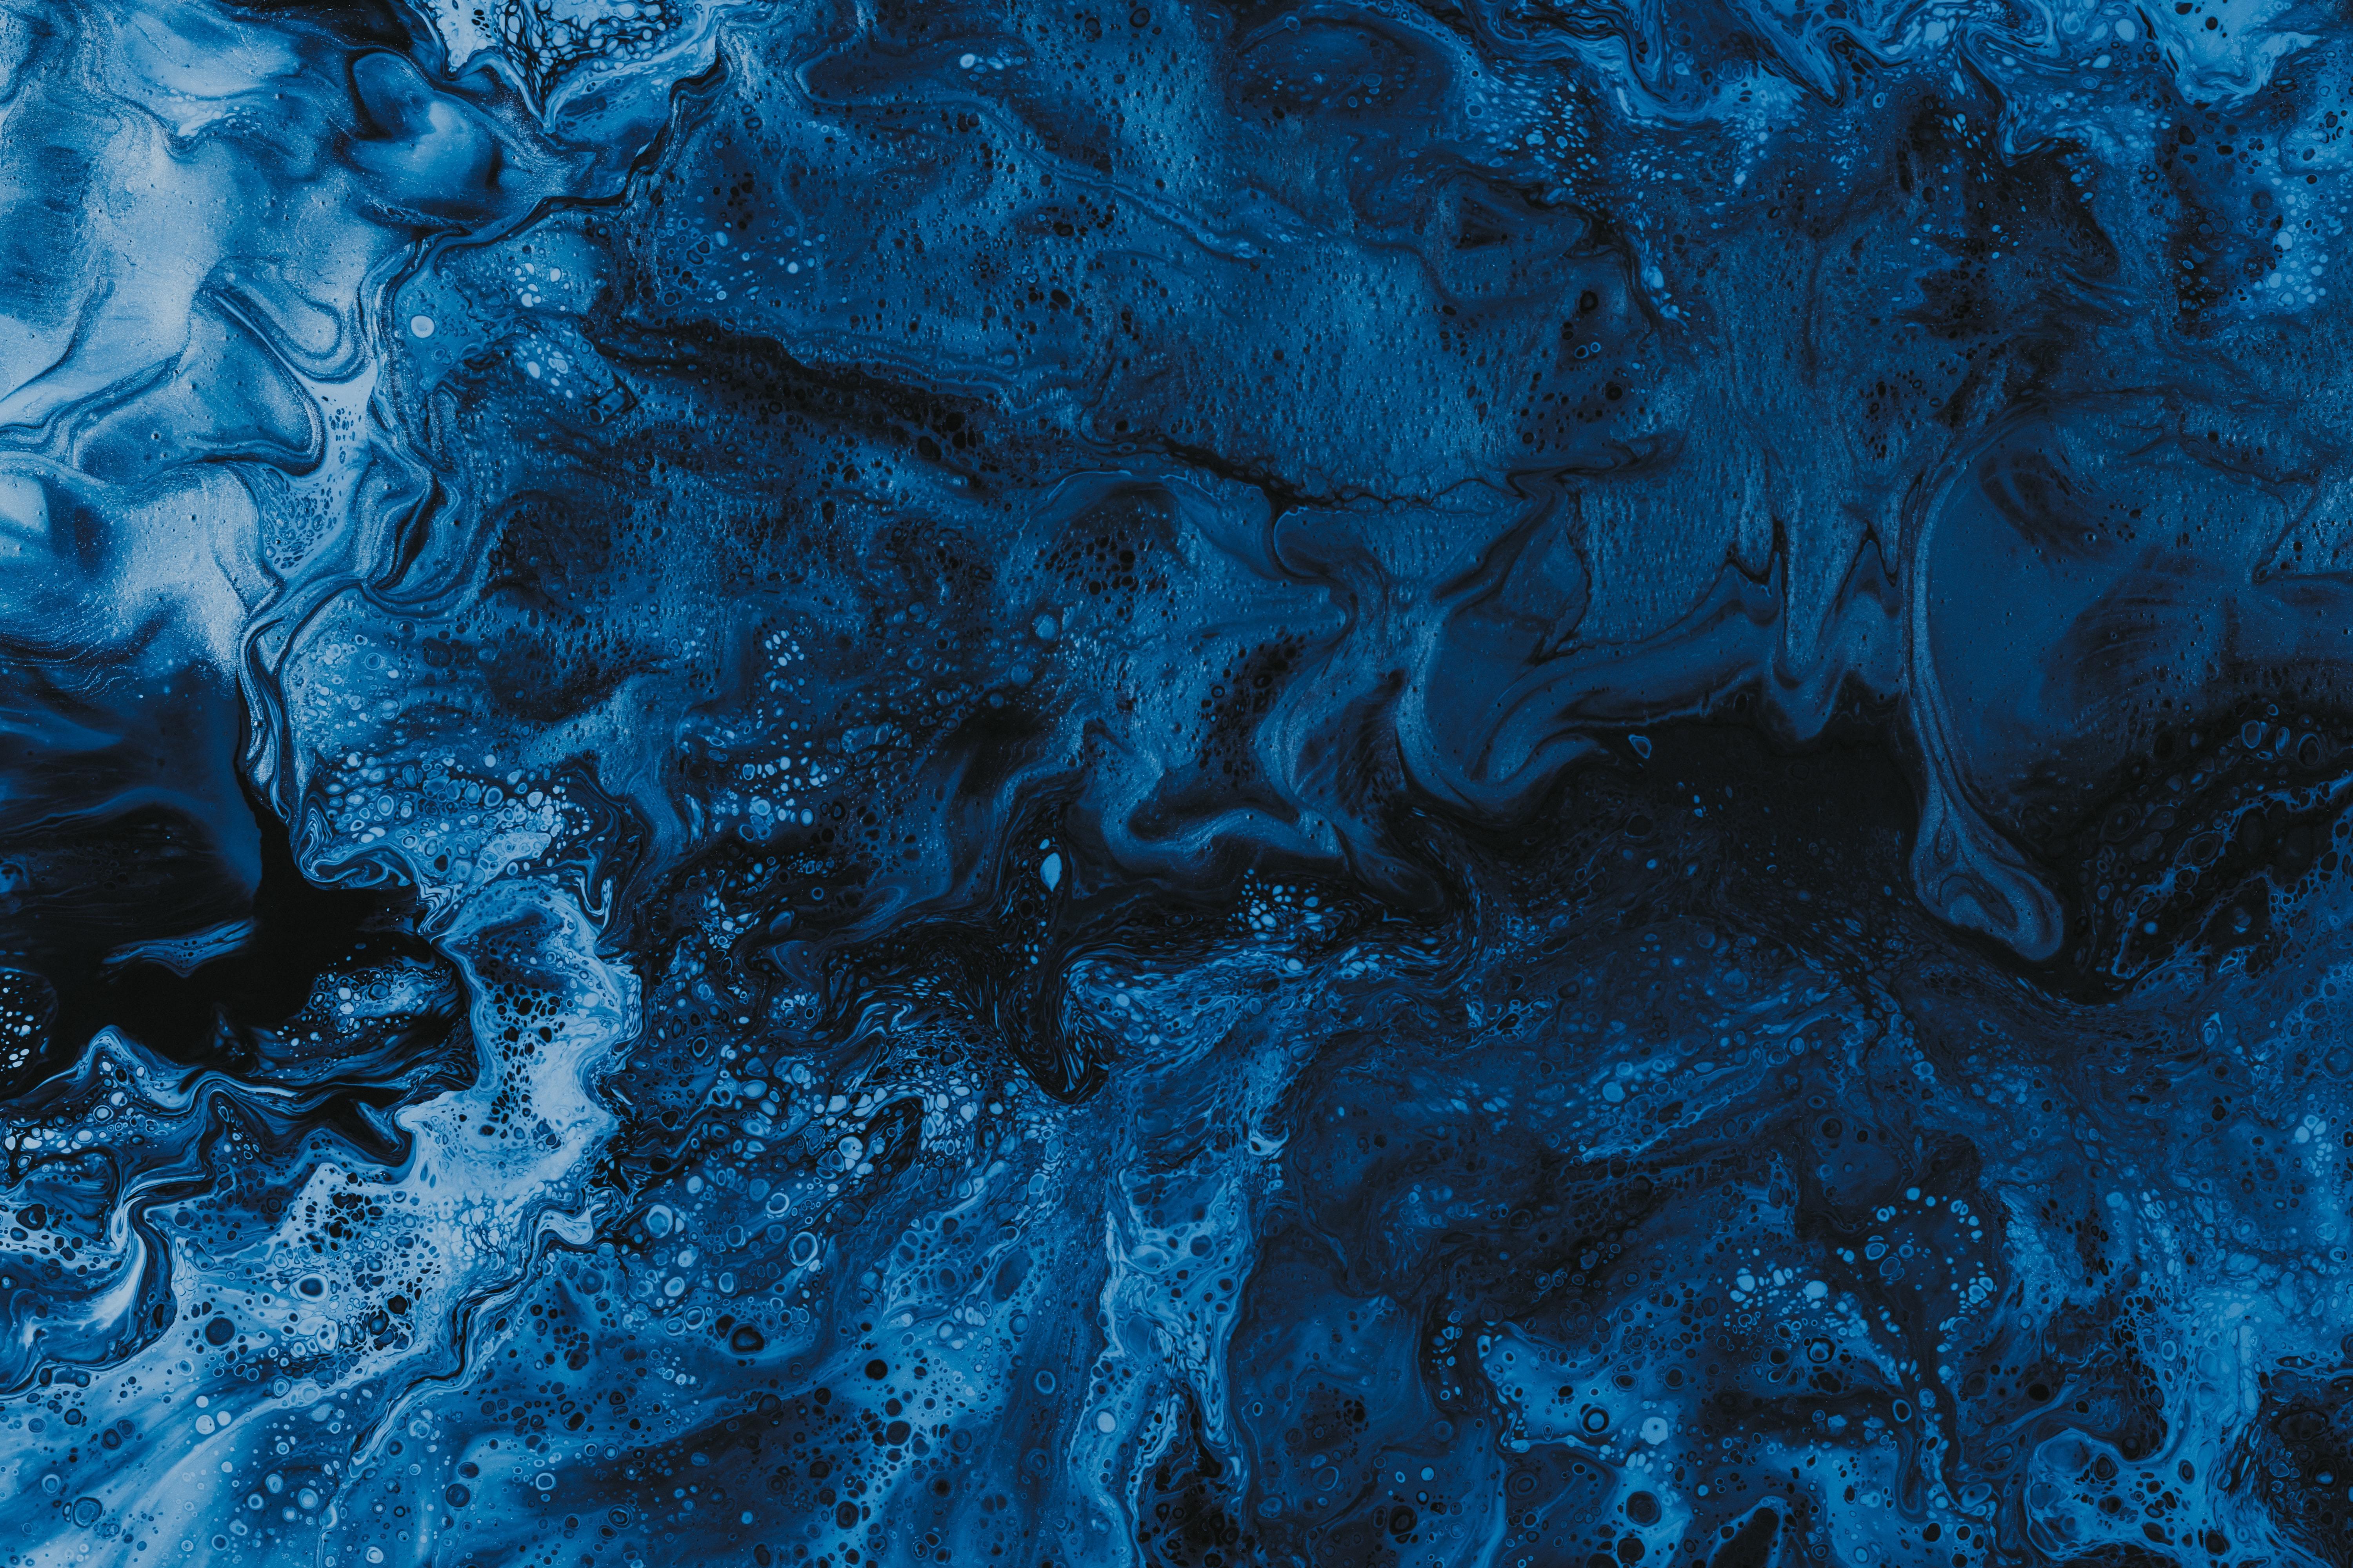 Abstract Blue 4k Ultra HD Wallpaper By Pawel Czerwinski